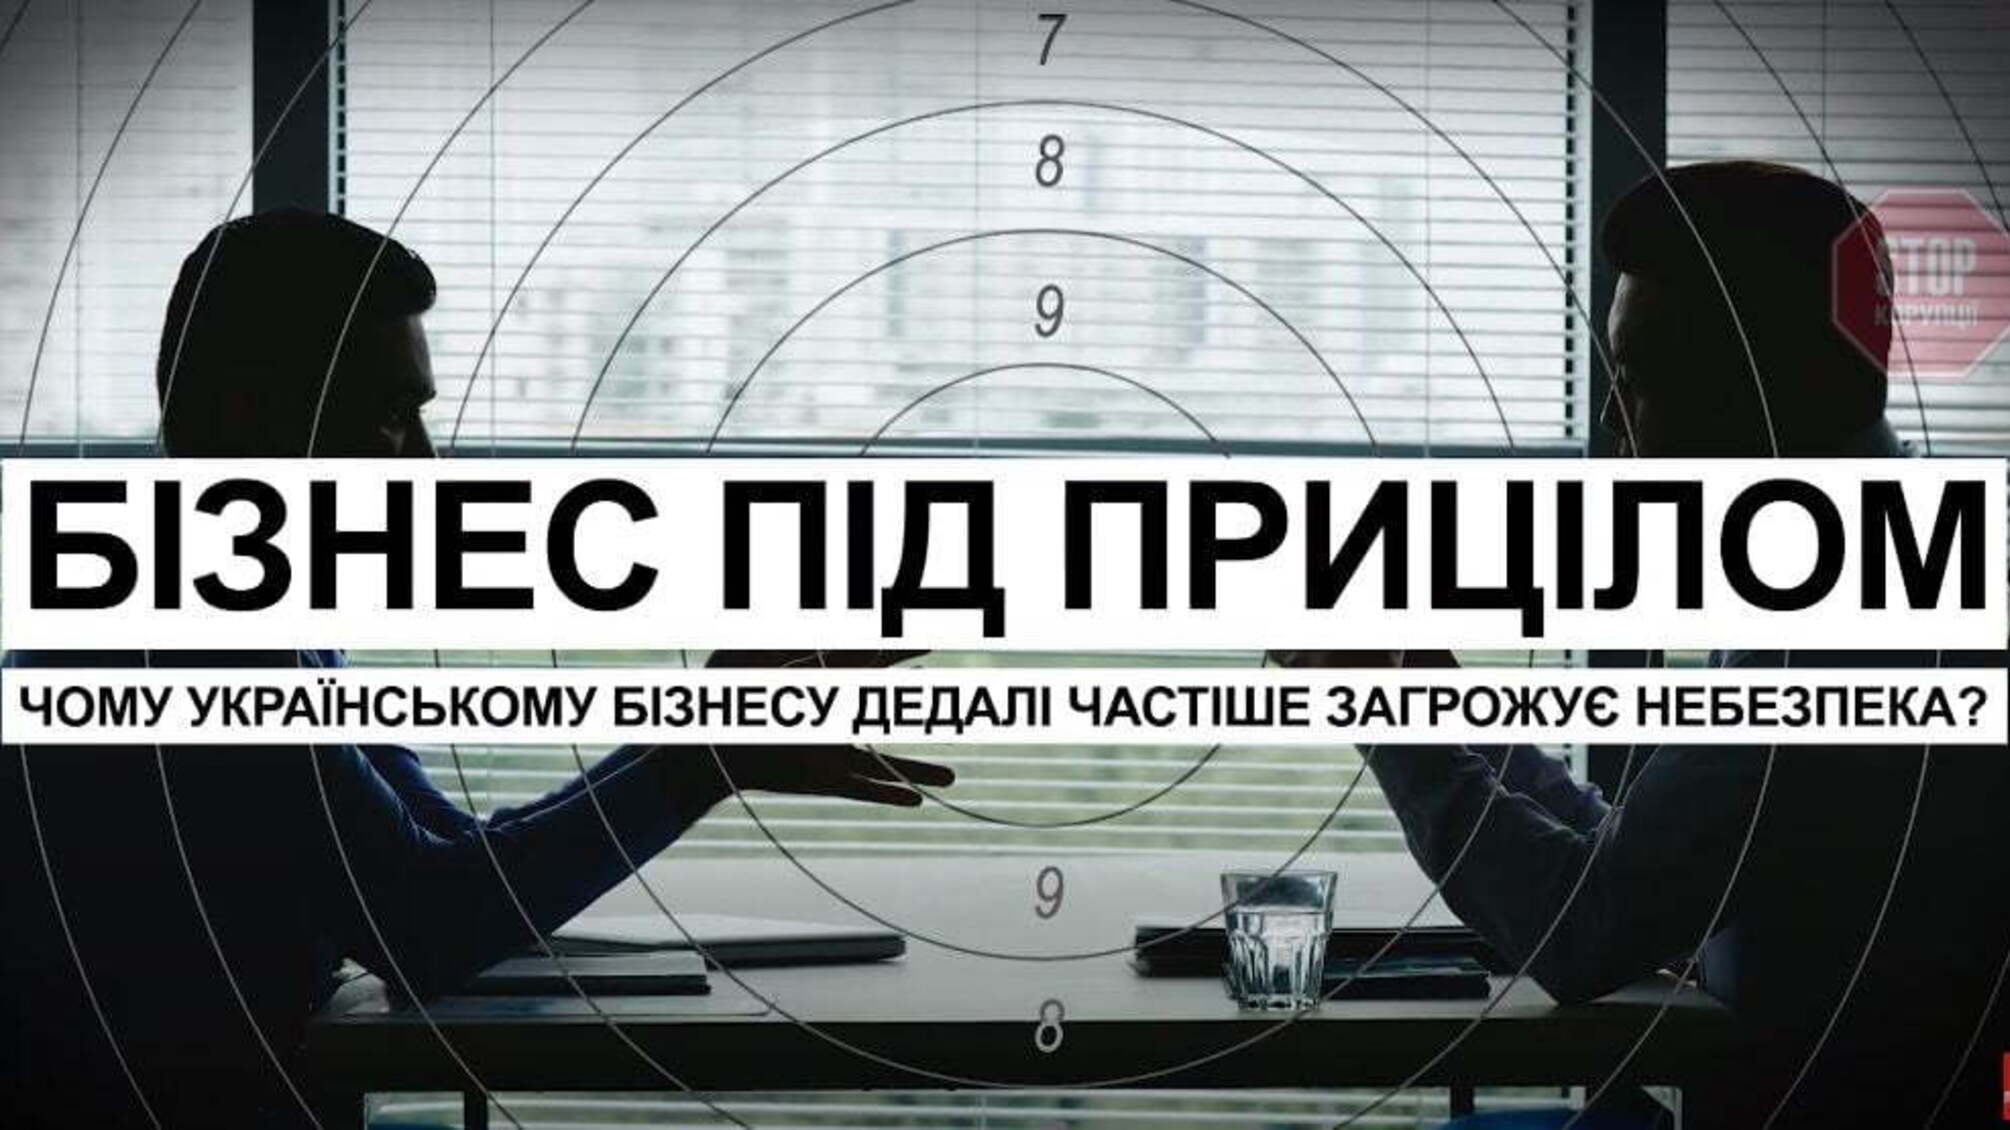 Пресконференція: Чому Українському Бізнесу Загрожує Небезпека?